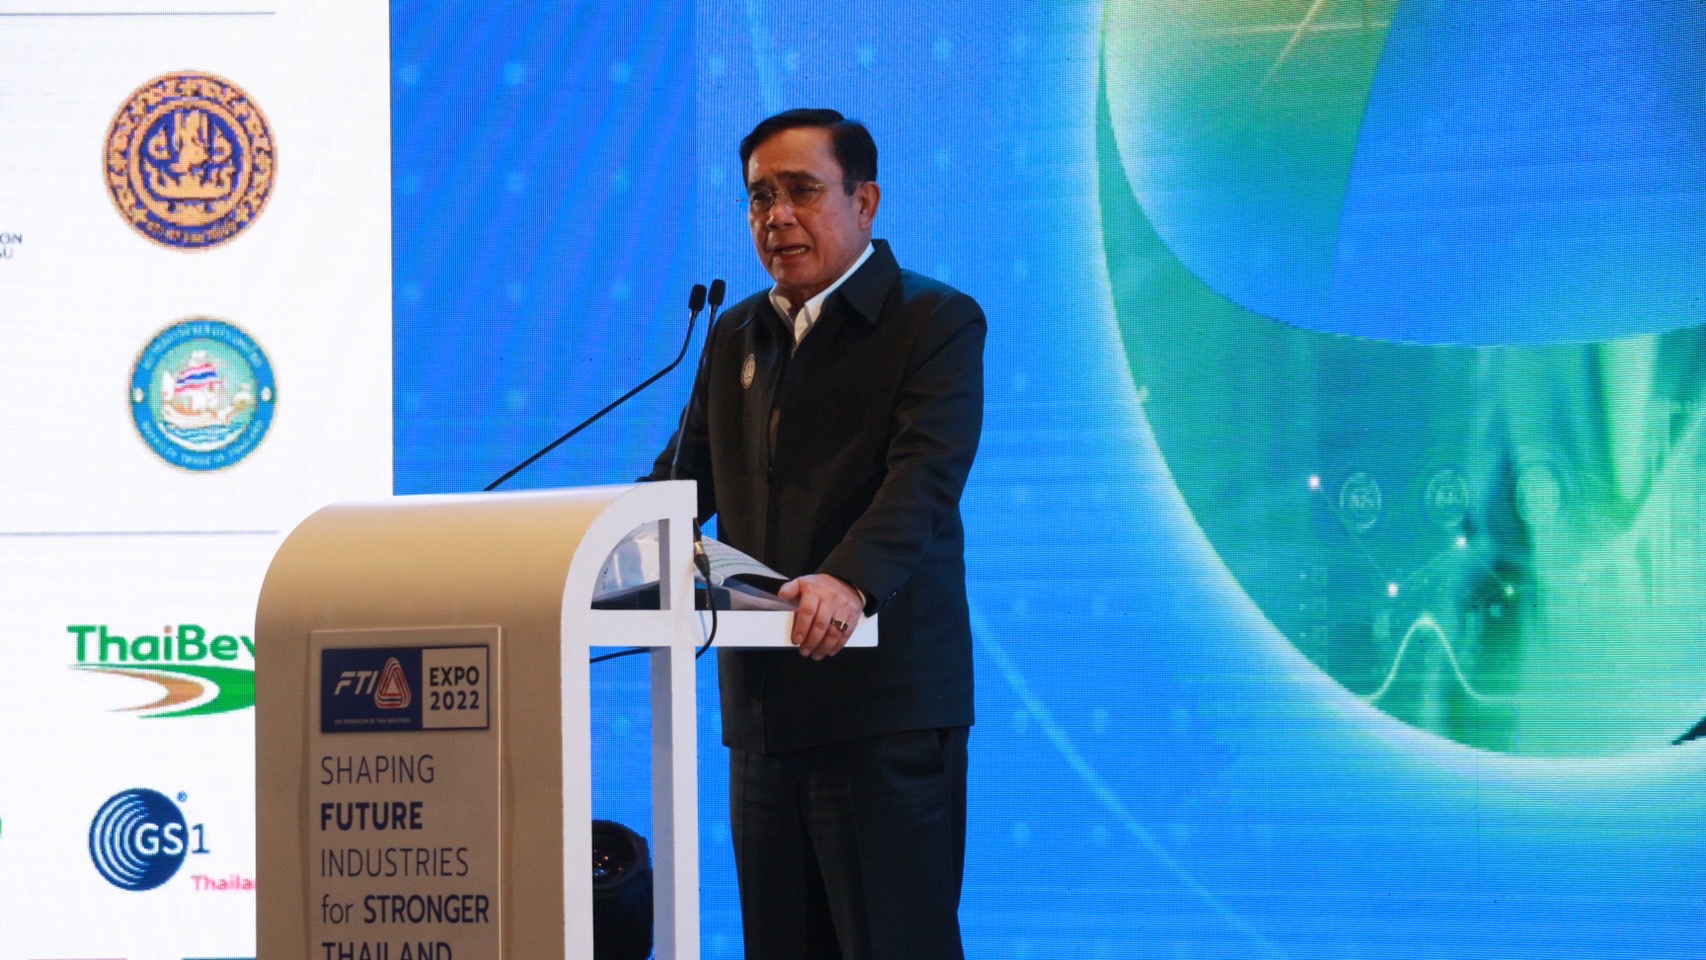 นายกรัฐมนตรี เปิดงานมหกรรมแสดงสินค้าและนวัตกรรมอุตสาหกรรมไทย FTI Expo 2022 เตรียมรีสตาร์ทประเทศไทย ผนึกกำลังภาคอุตสาหกรรมไทยขานรับนโยบายการเปิดประเทศ พร้อมขับเคลื่อนโมเดลเศรษฐกิจ  BCG ดัน Soft Power เพิ่มมูลค่าเศรษฐกิจสร้างสรรค์